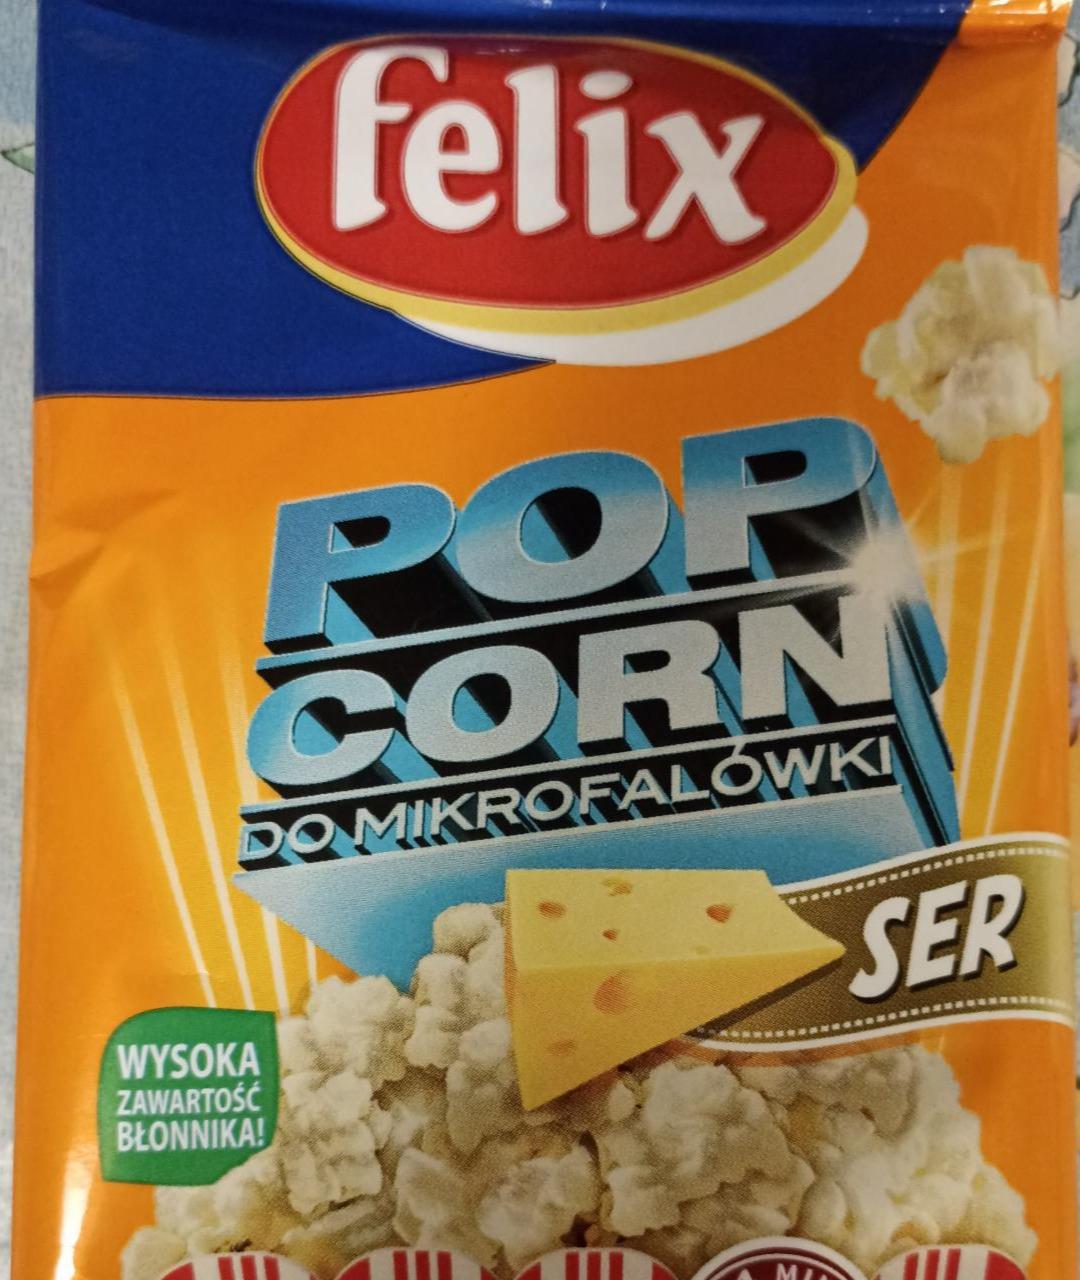 Zdjęcia - Popcorn do Mikrofalówki Ser Felix